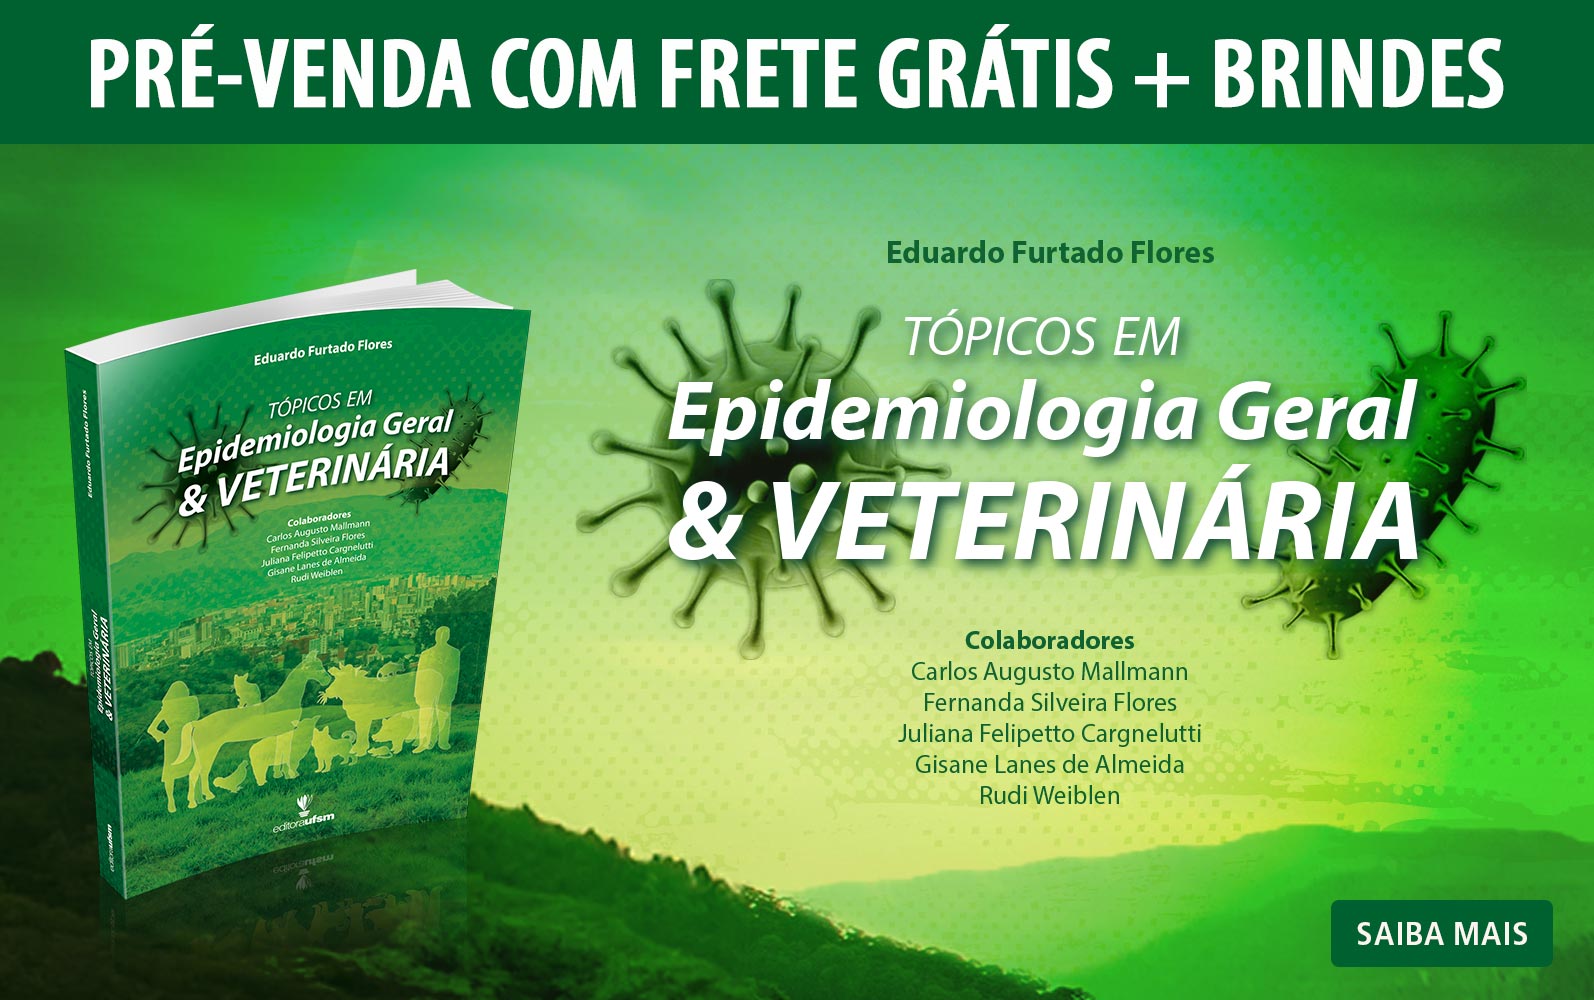 Saiba mais sobre o livro Tópicos em Epidemiologia Geral & Veterinária